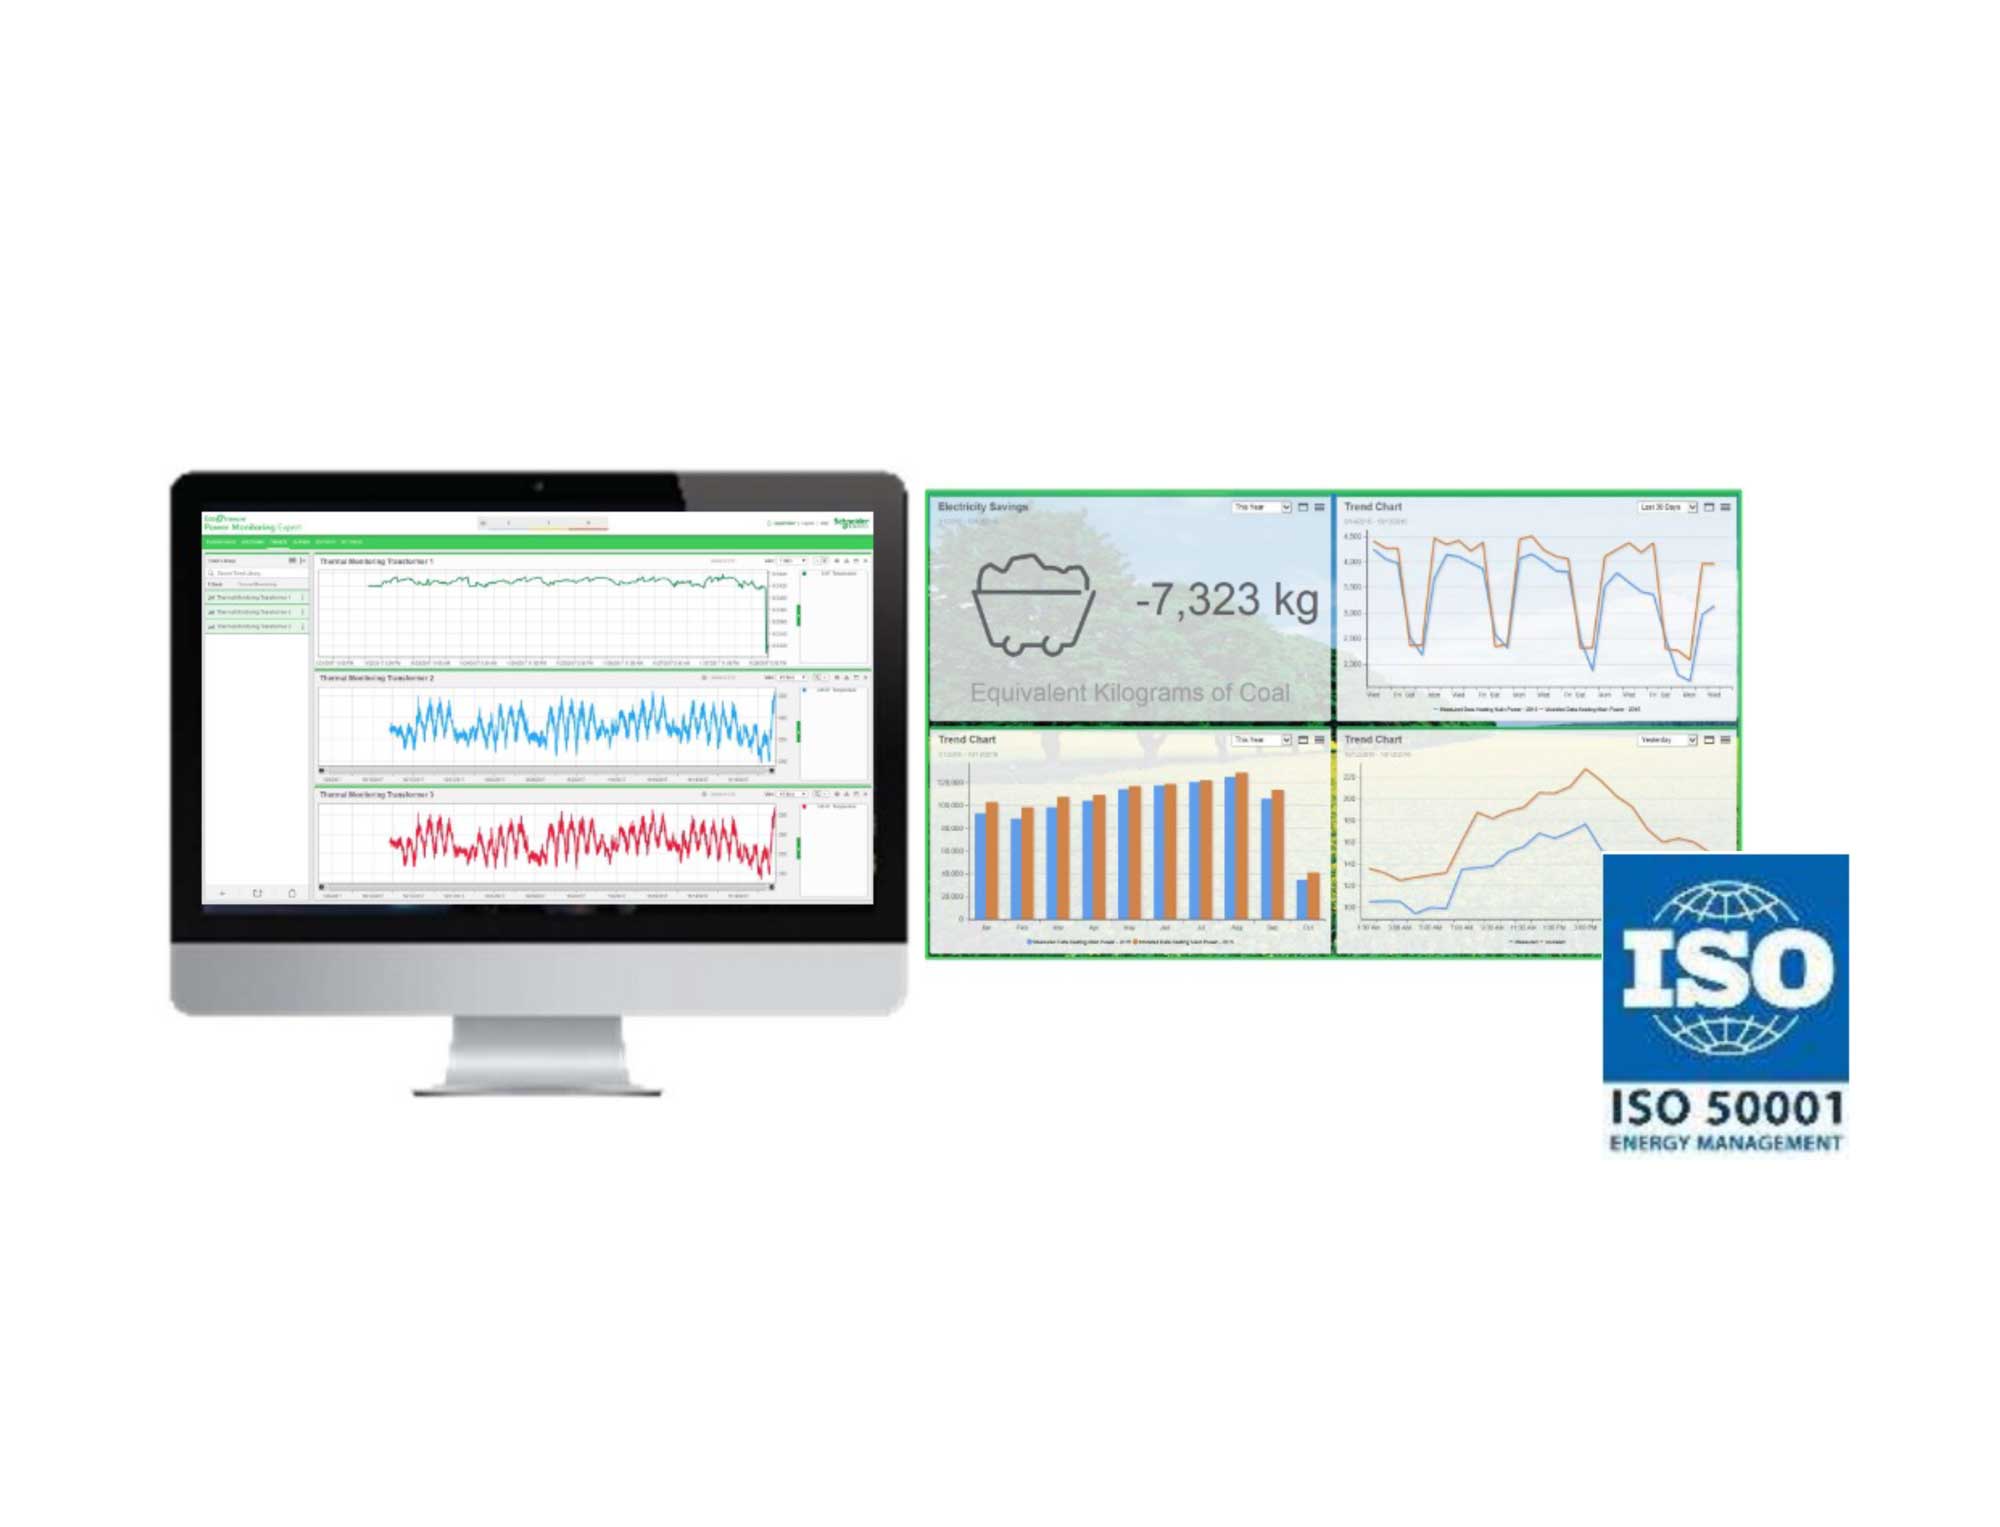 funcionalidades ISO software eficiencia energetica